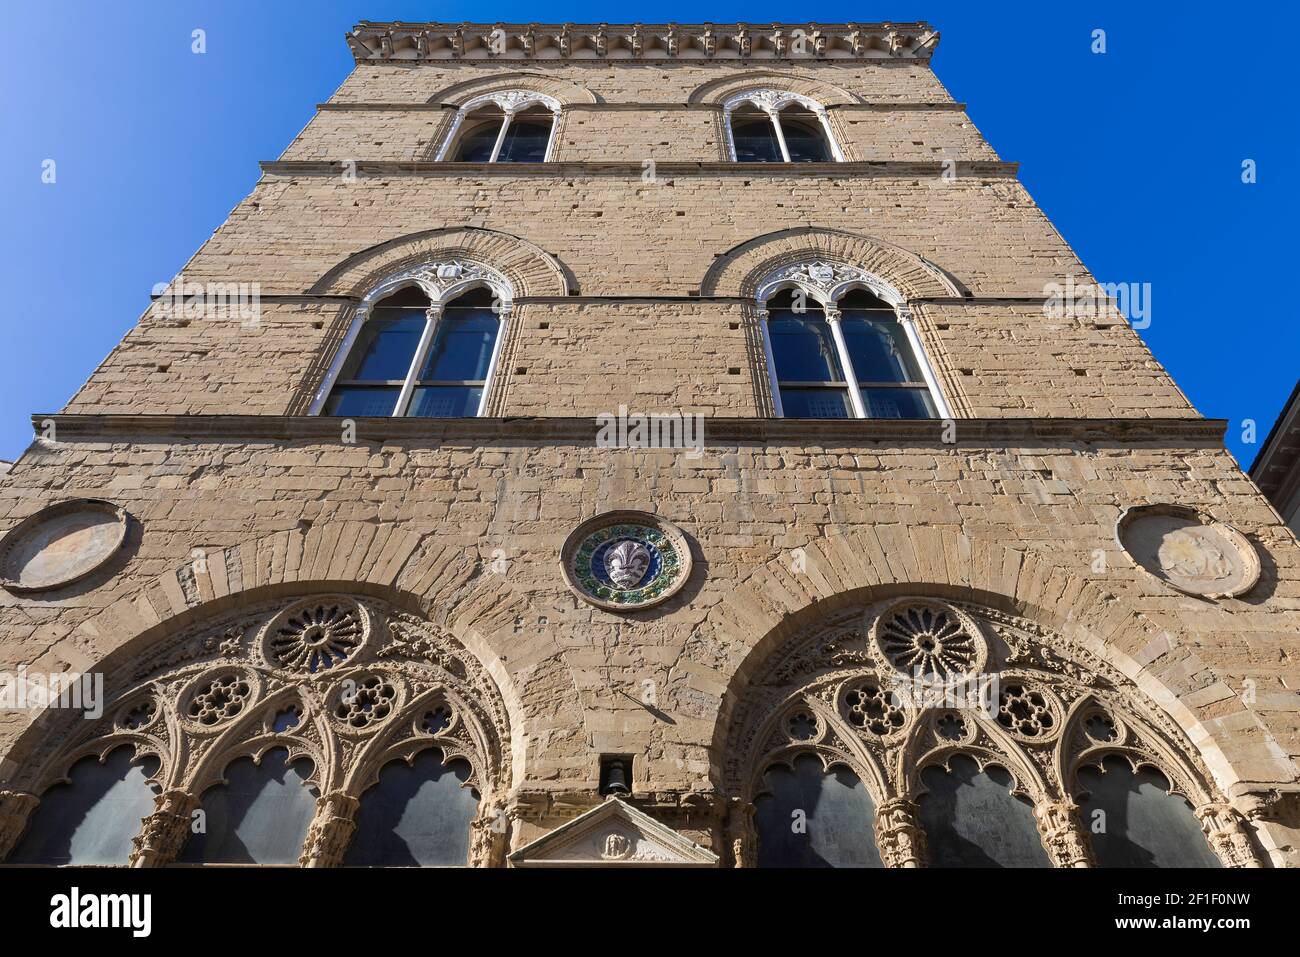 L'église d'Orsanmichele, anciennement connue sous le nom d'église de San Michele à Orto, est située à Florence et était à l'origine une loggia construite pour le Banque D'Images